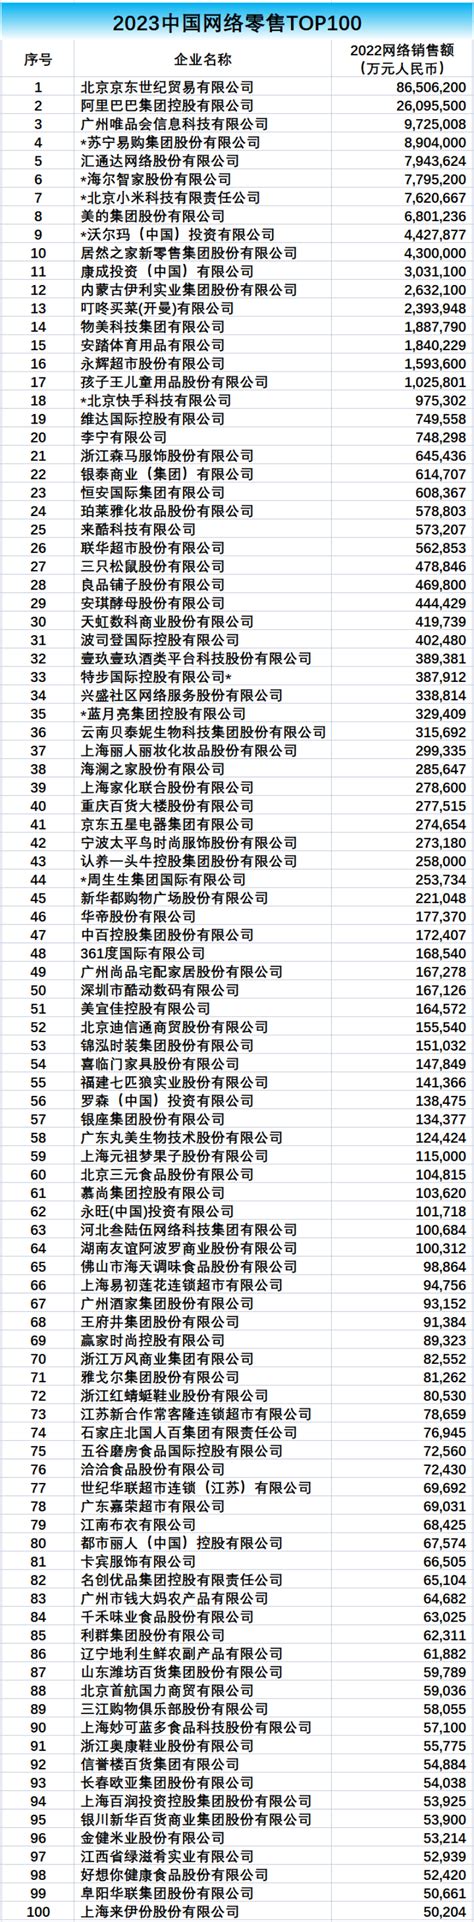 2023中国网络零售Top 100榜单发布